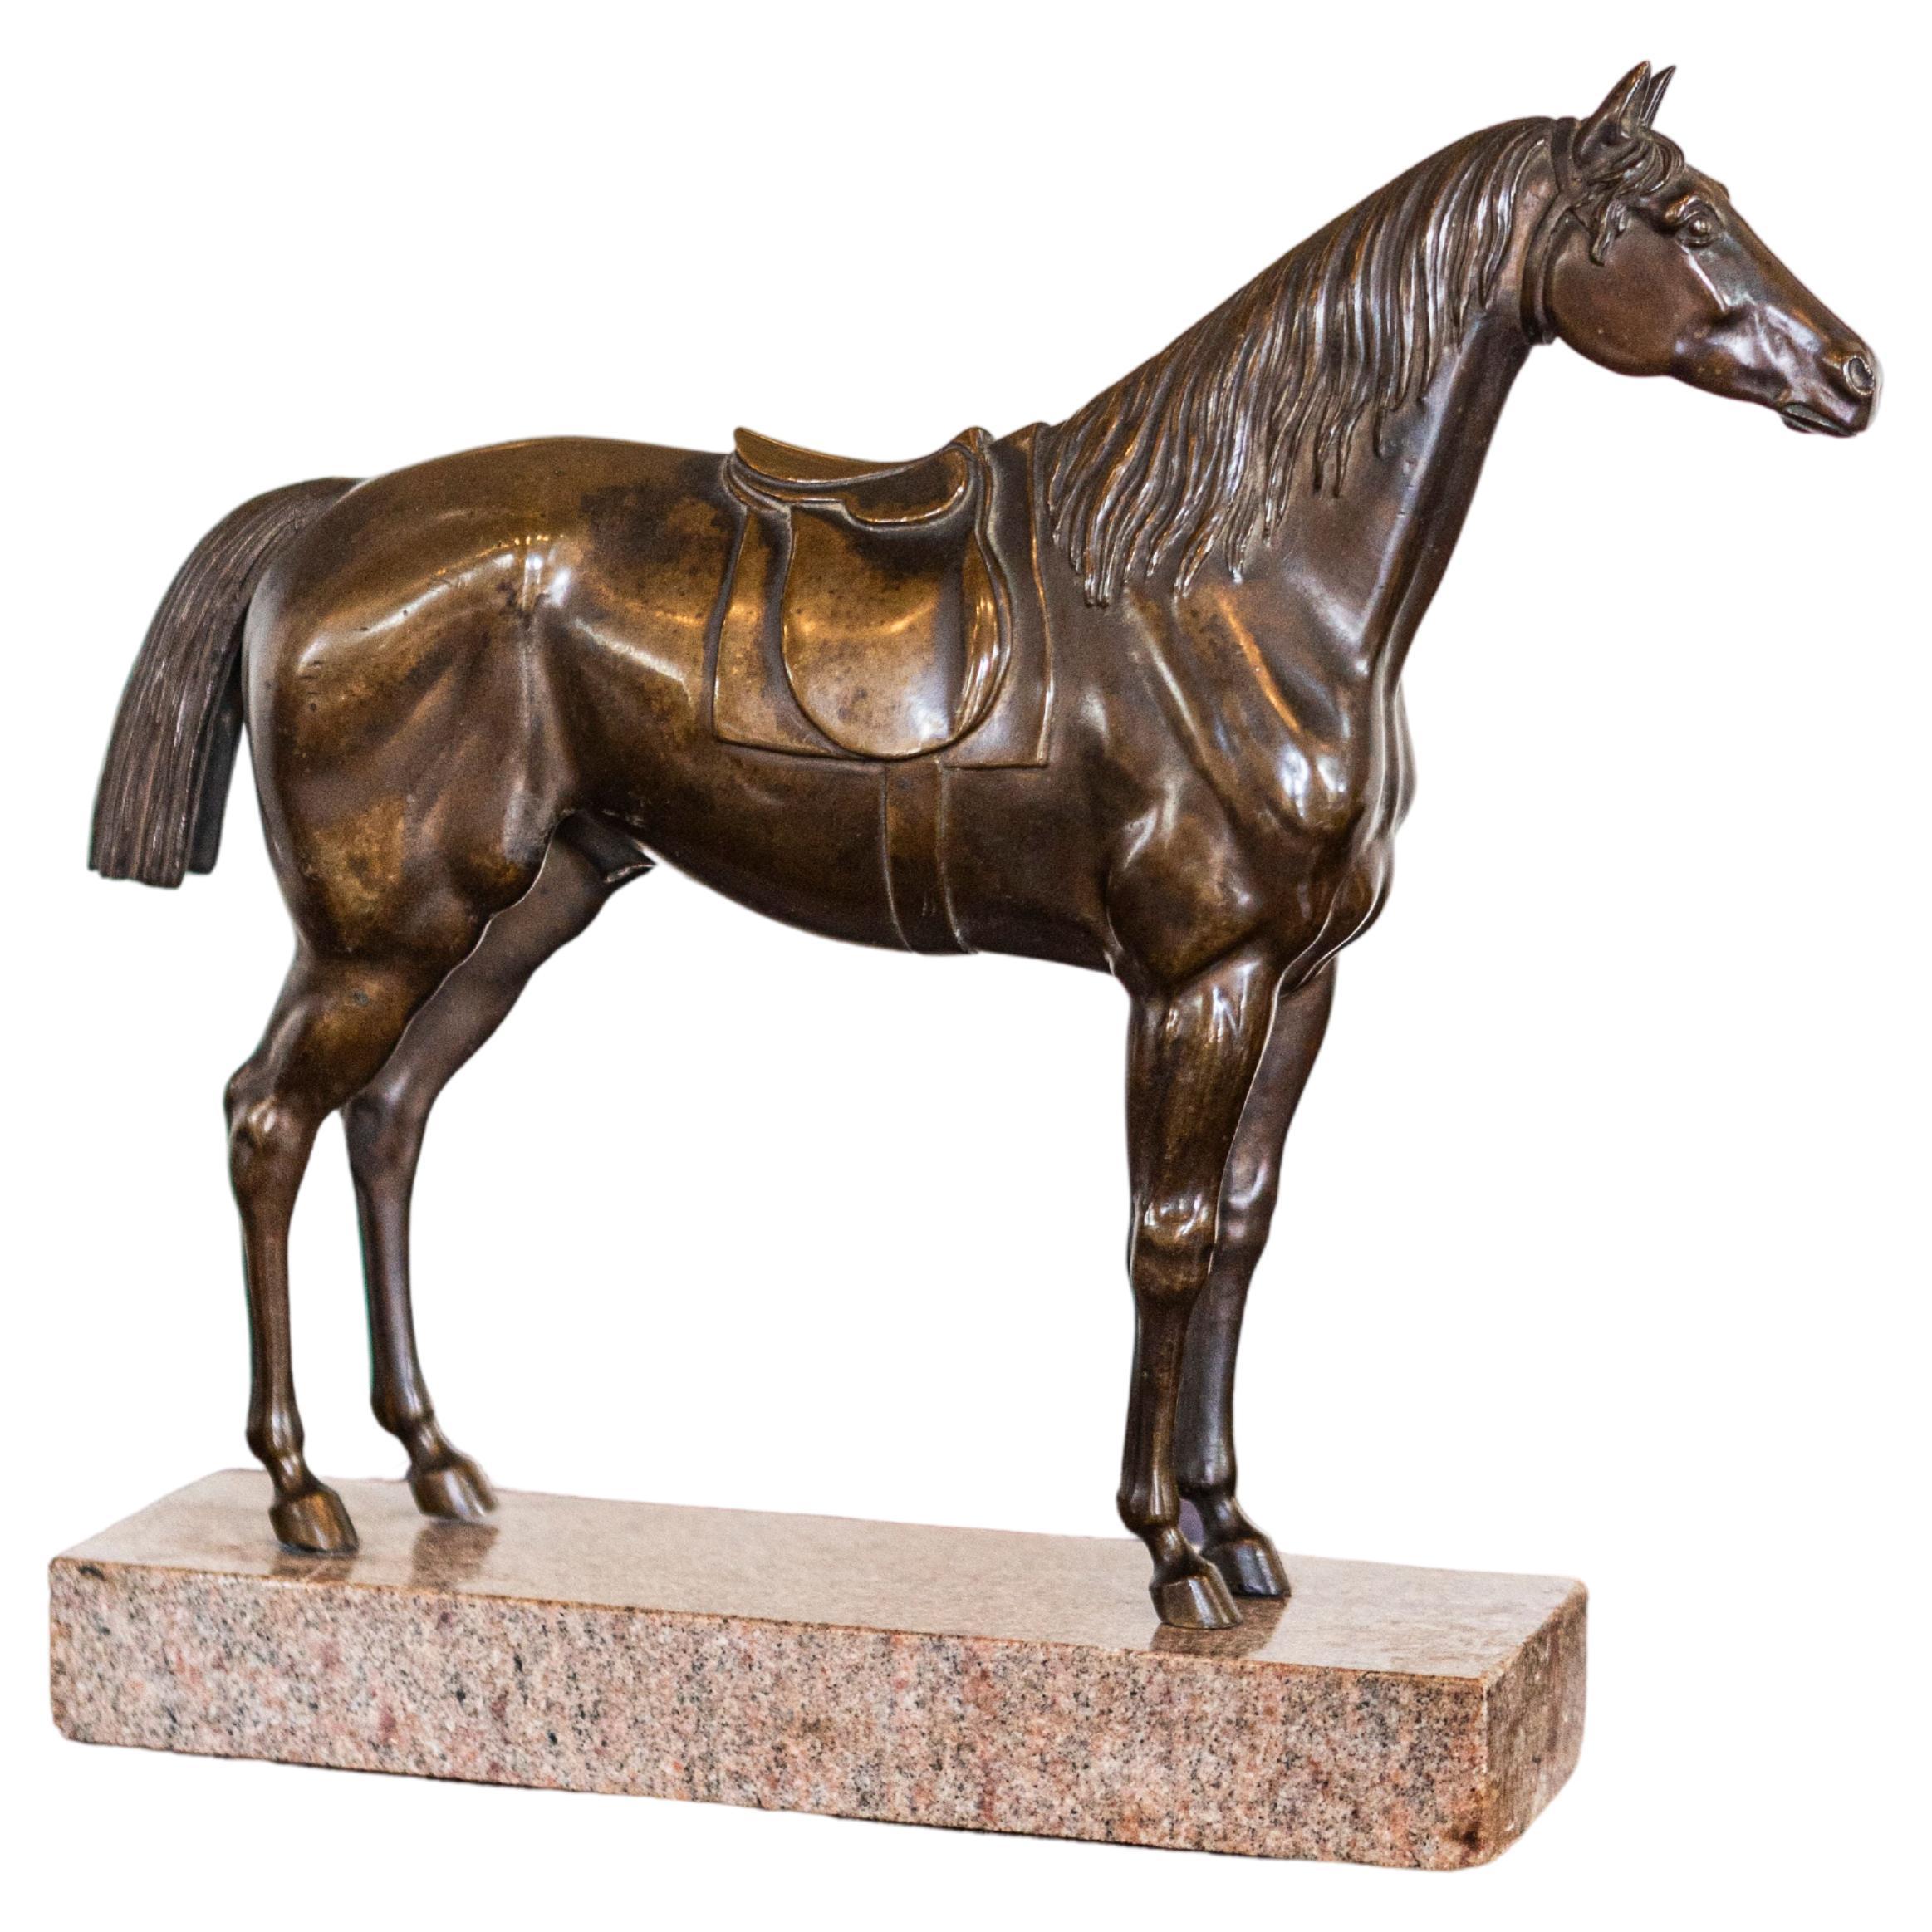 Statuette française de cheval en bronze sur socle en granit avec moulures détaillées